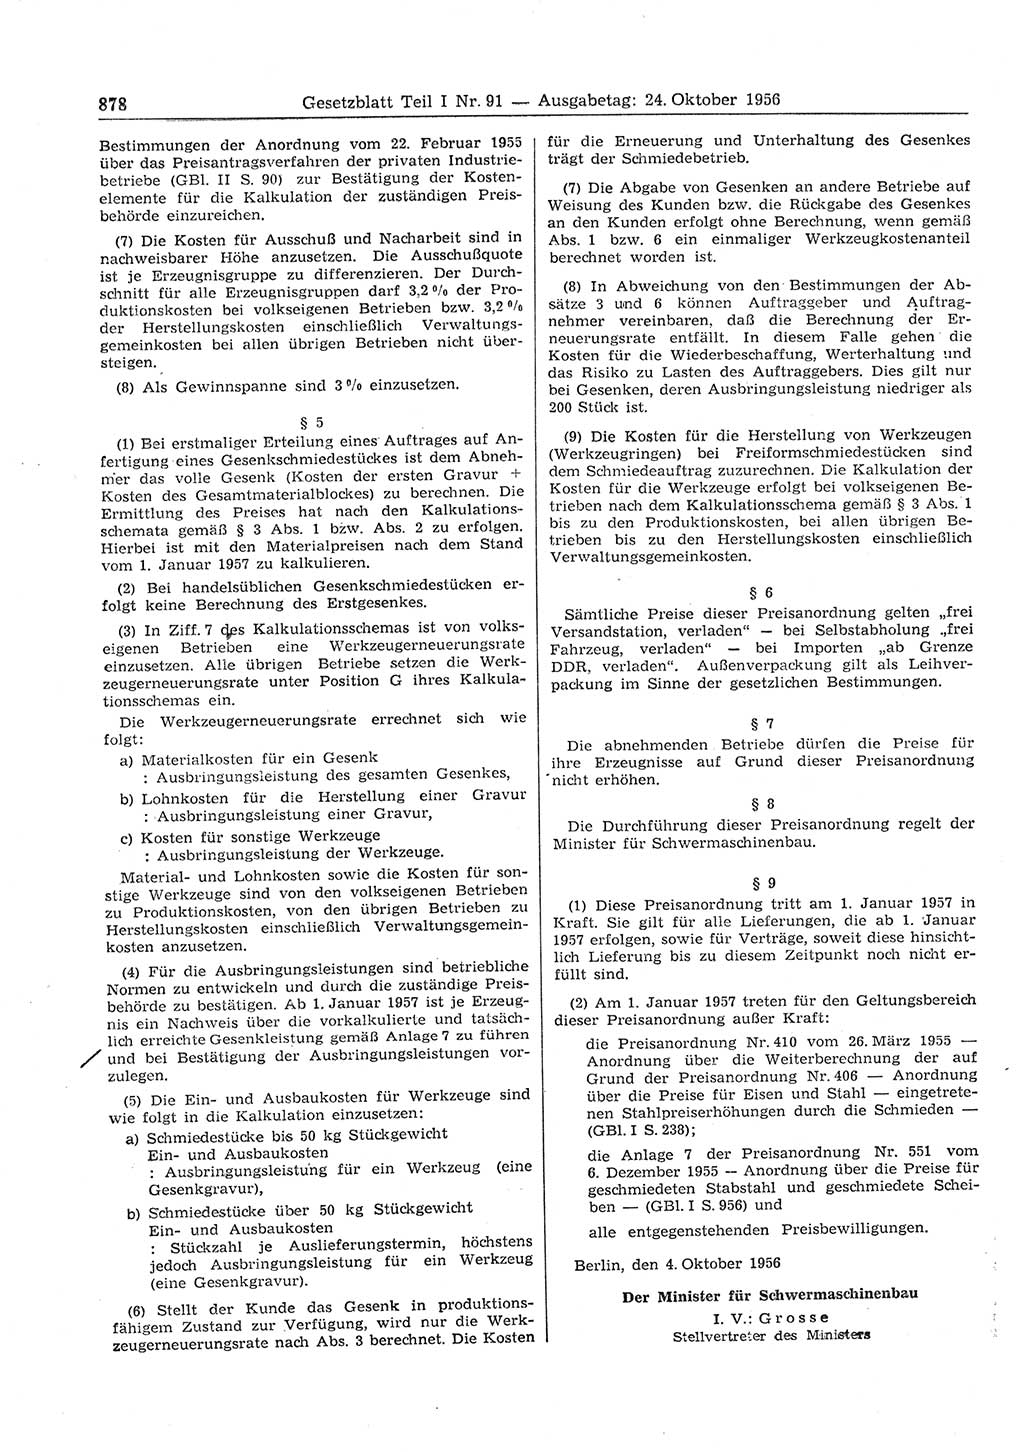 Gesetzblatt (GBl.) der Deutschen Demokratischen Republik (DDR) Teil Ⅰ 1956, Seite 878 (GBl. DDR Ⅰ 1956, S. 878)